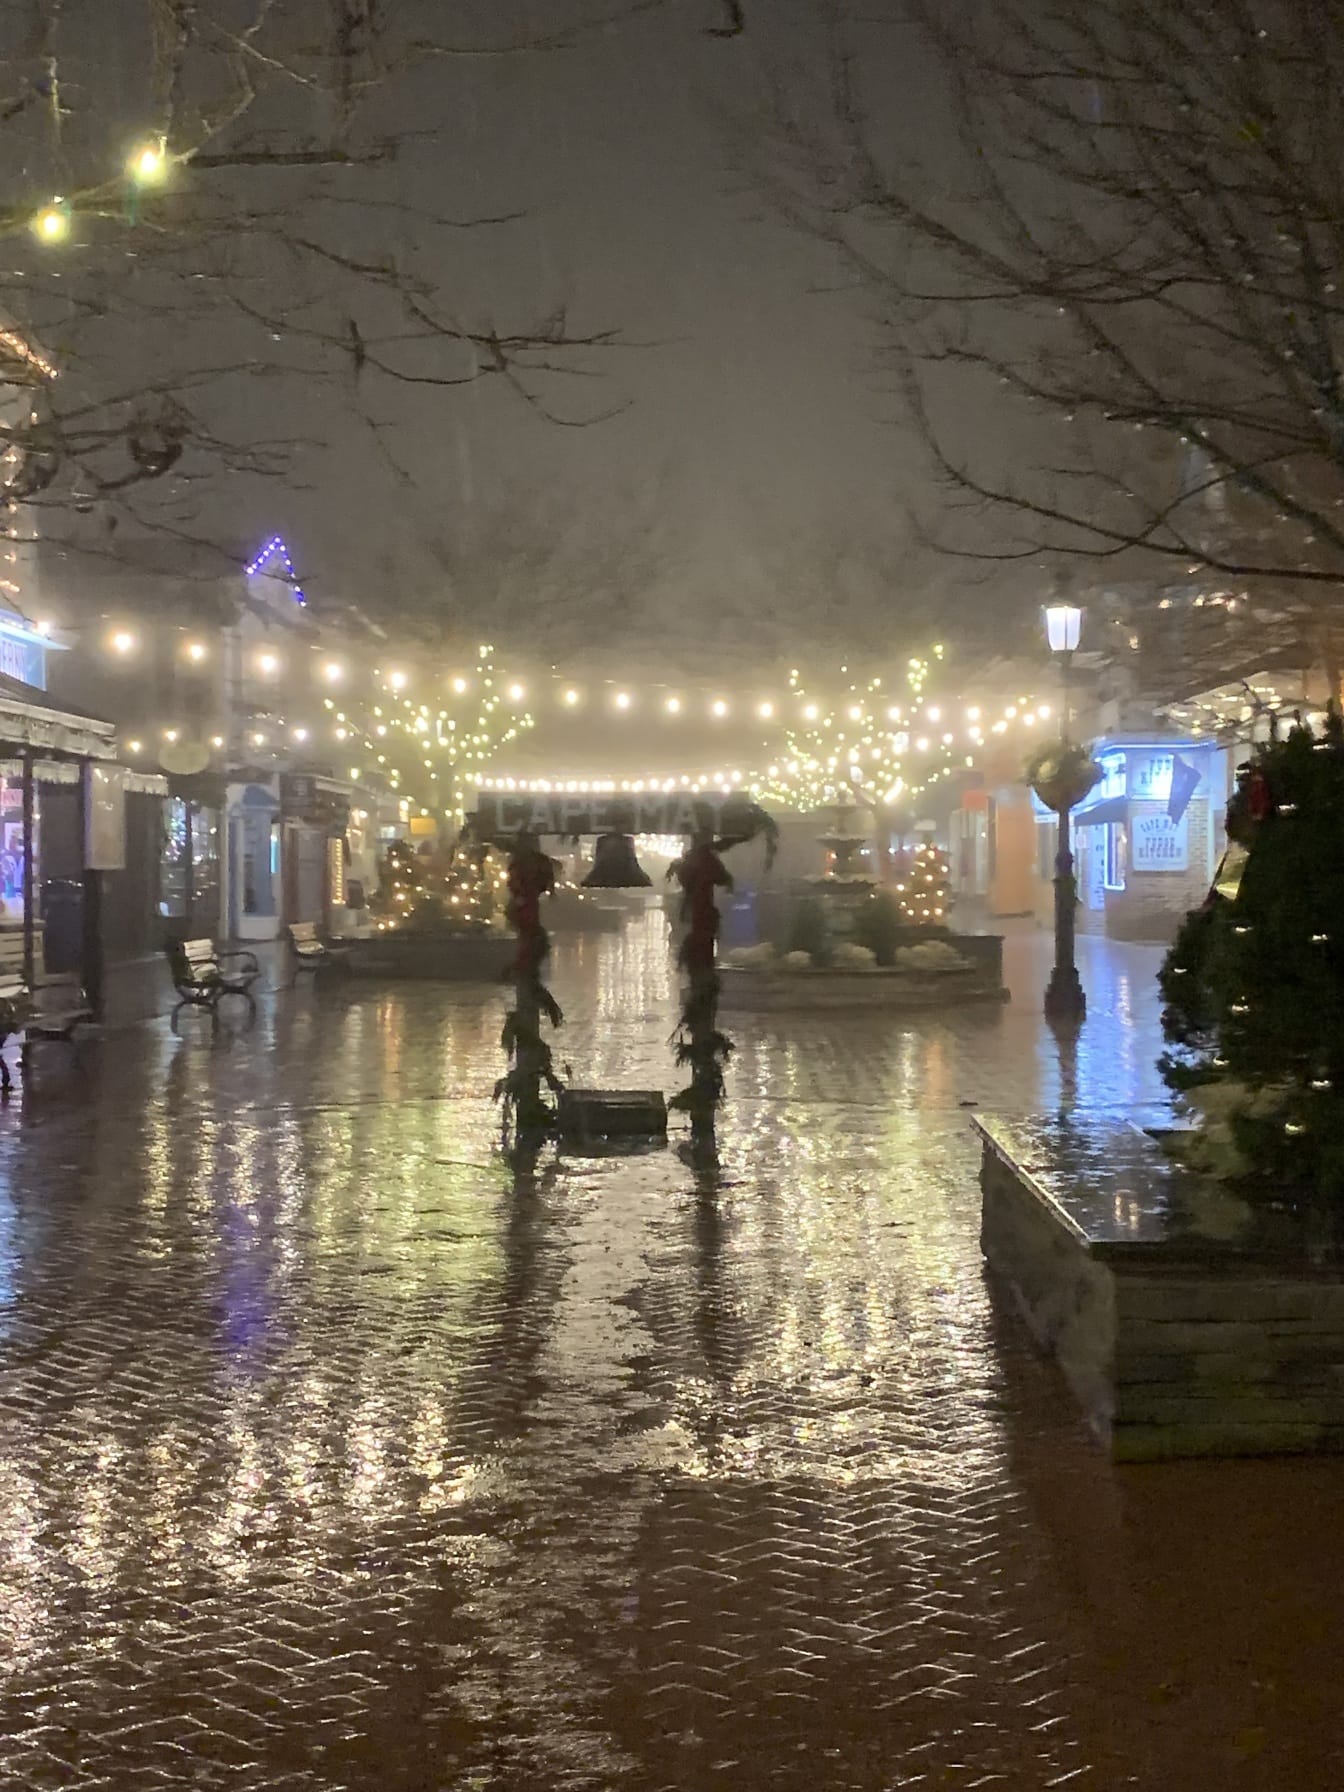 Cape May Washington Mall Capodanno in una notte piovosa con luci di Natale